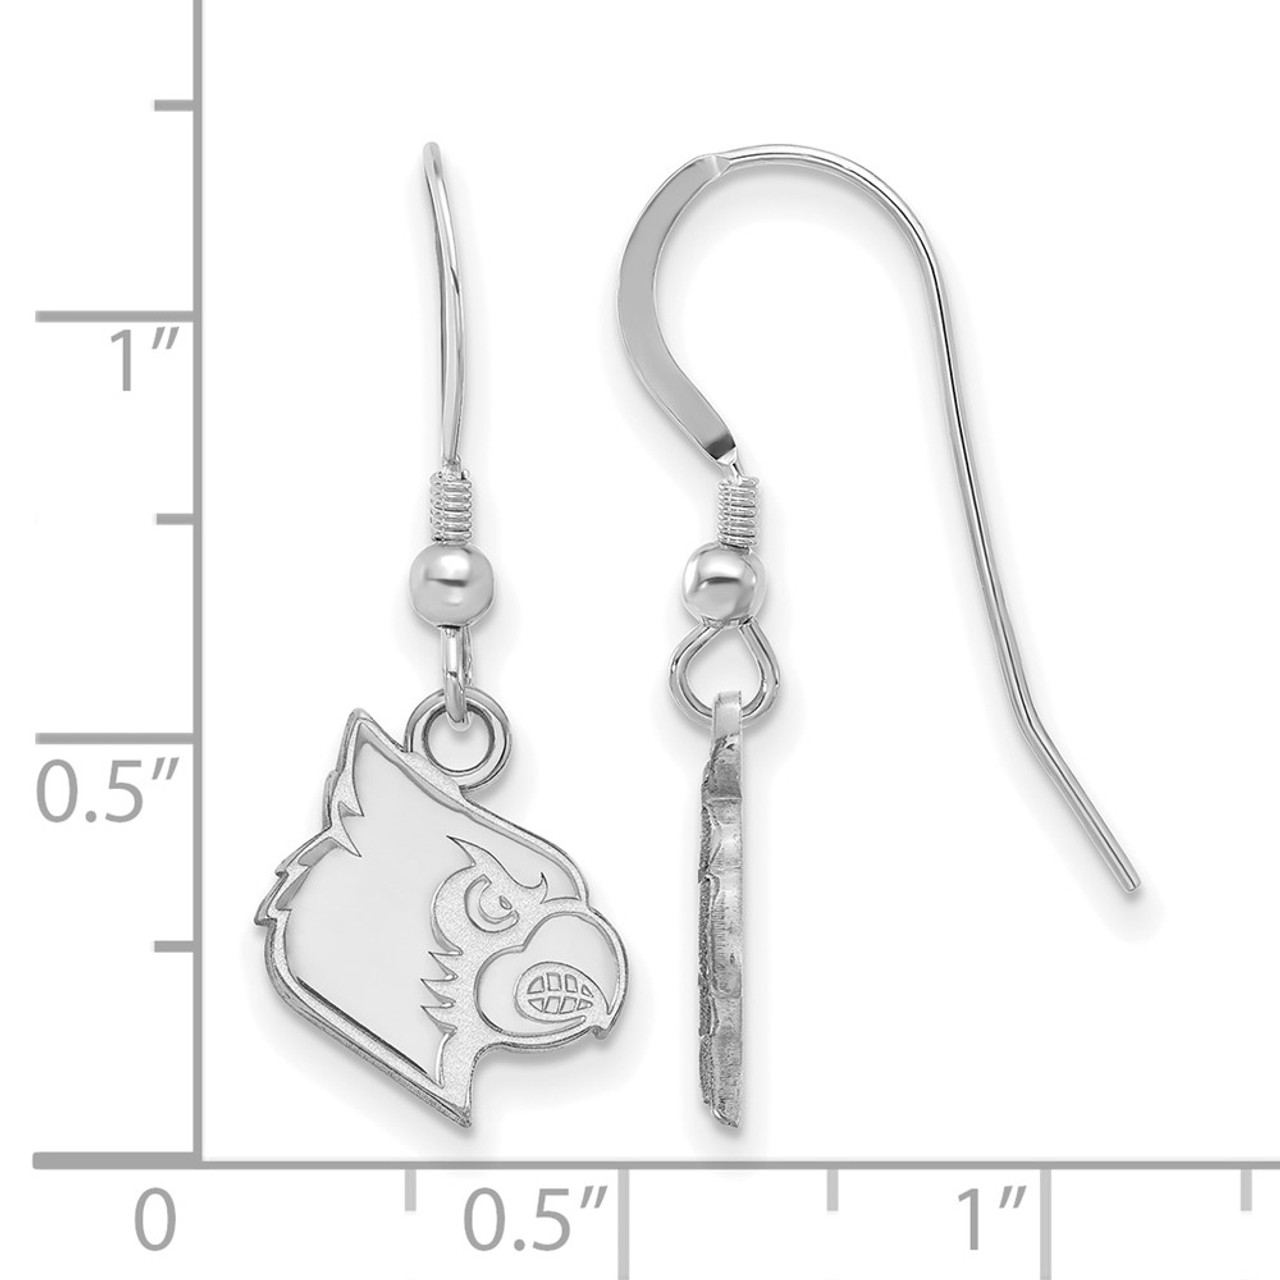 louisville earrings